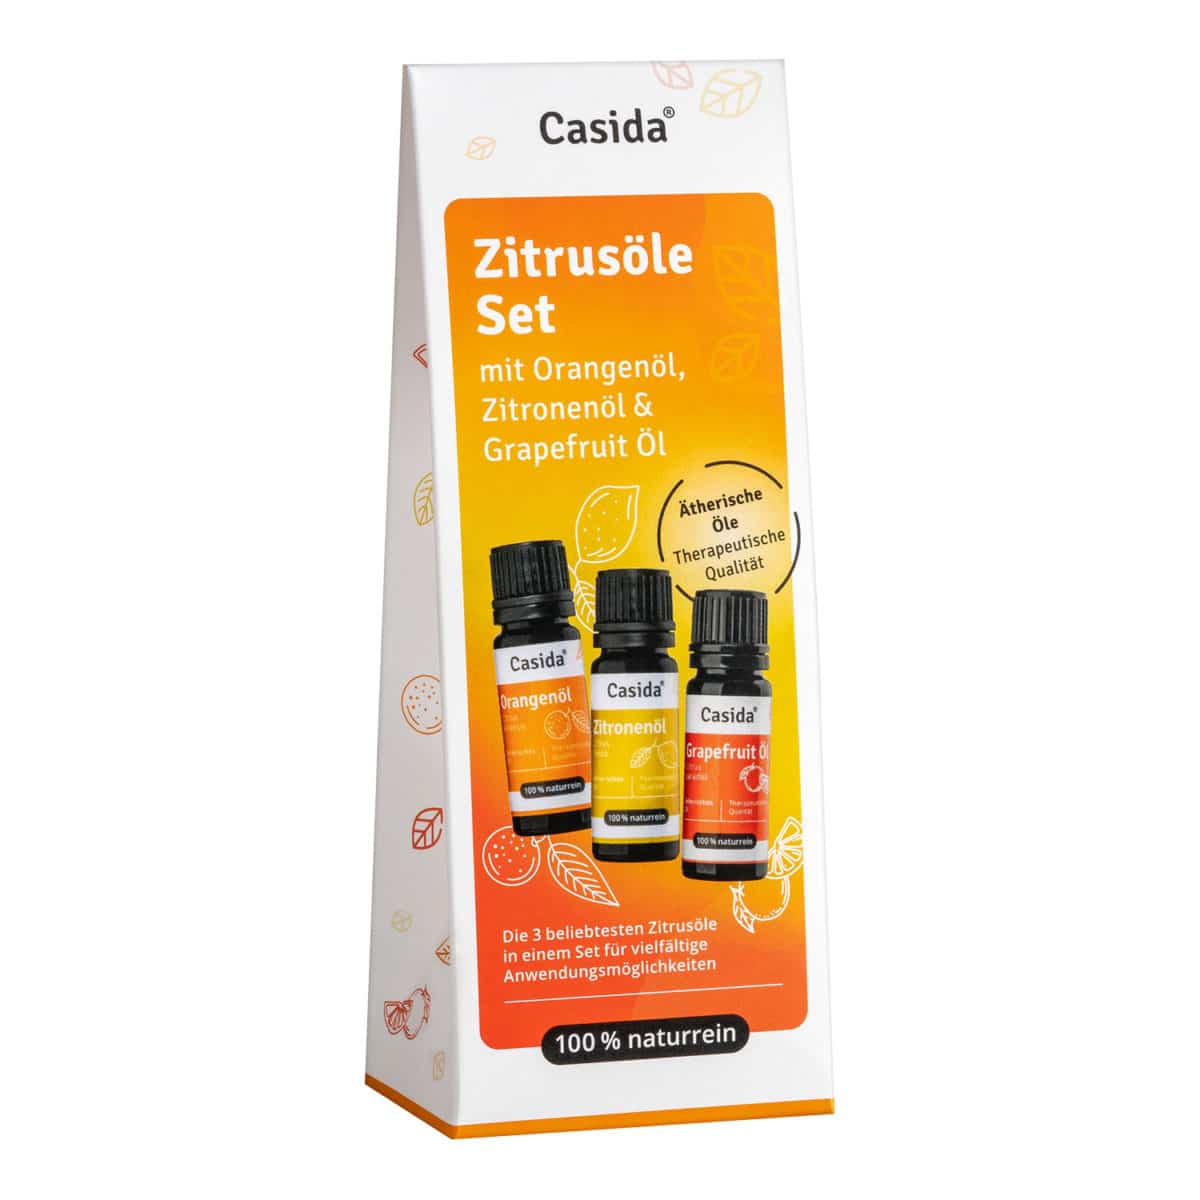 Zitrus Set - Ätherische Öle Set mit Zitrone, Orange & Grapefruit naturrein Aroma Diffuser Körperöl Wirkung10